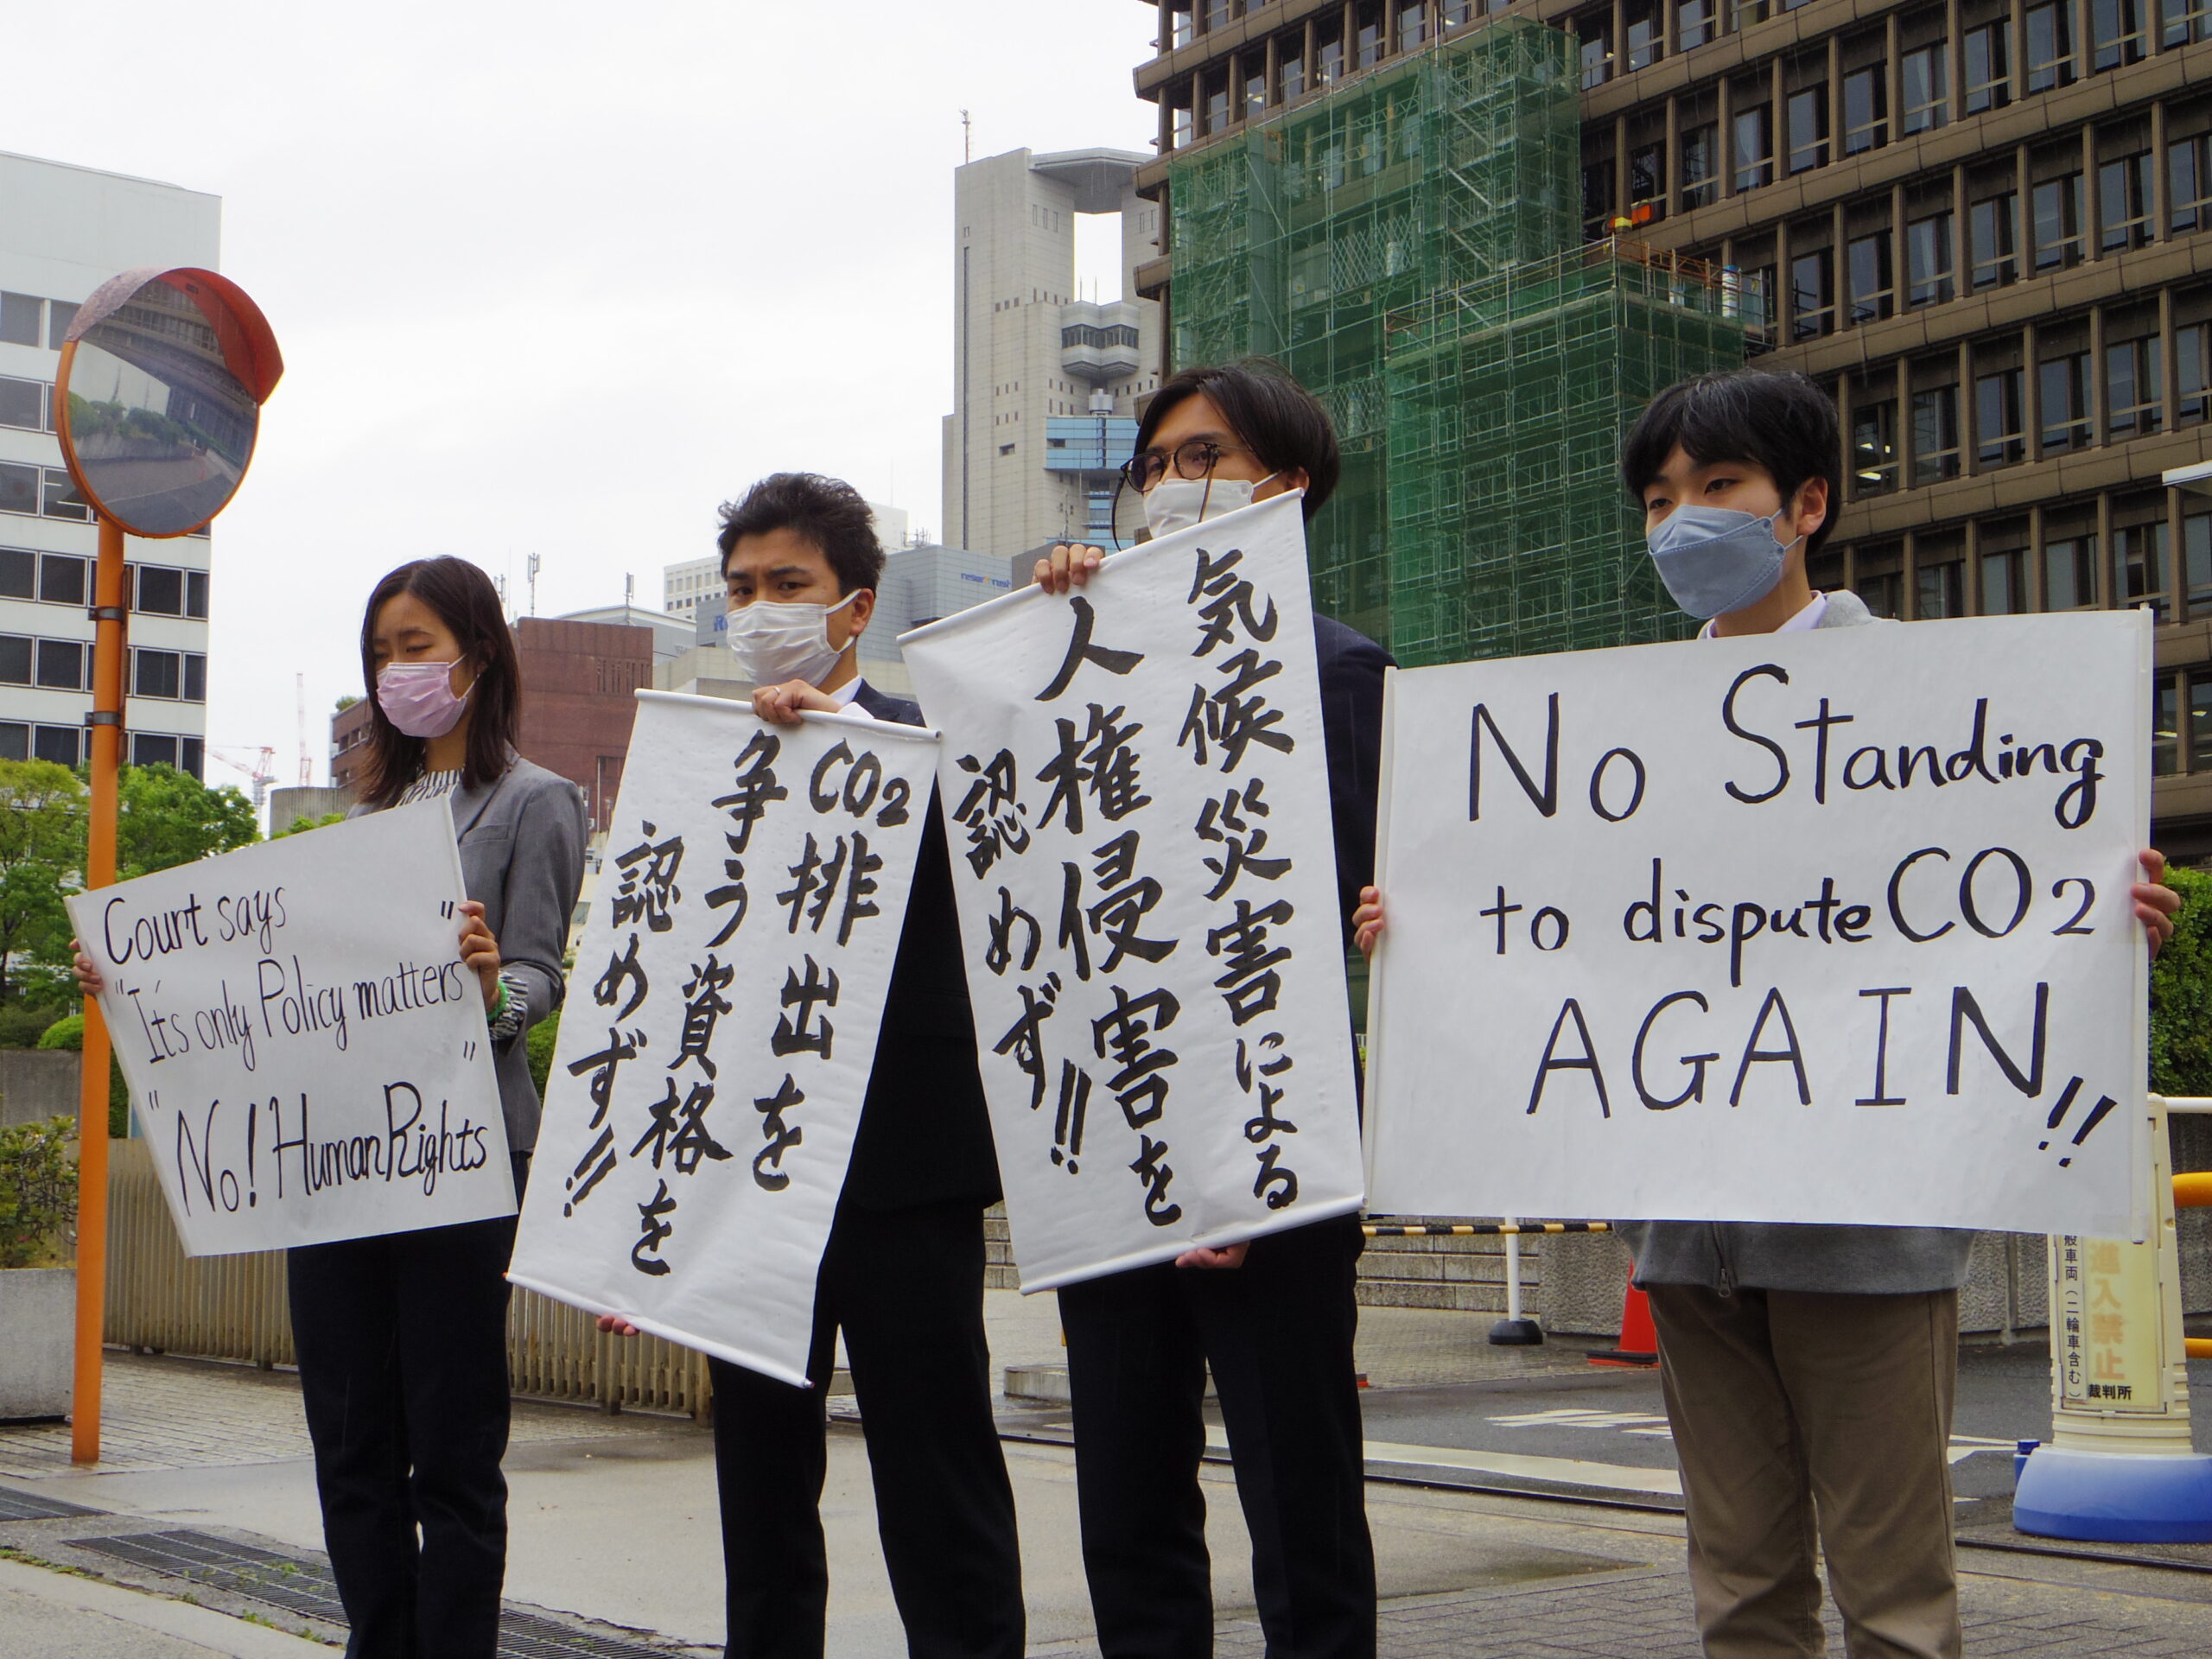 【News】Kobe Climate Case: Court Again Rejects Plaintiffs’ Administrative Lawsuit